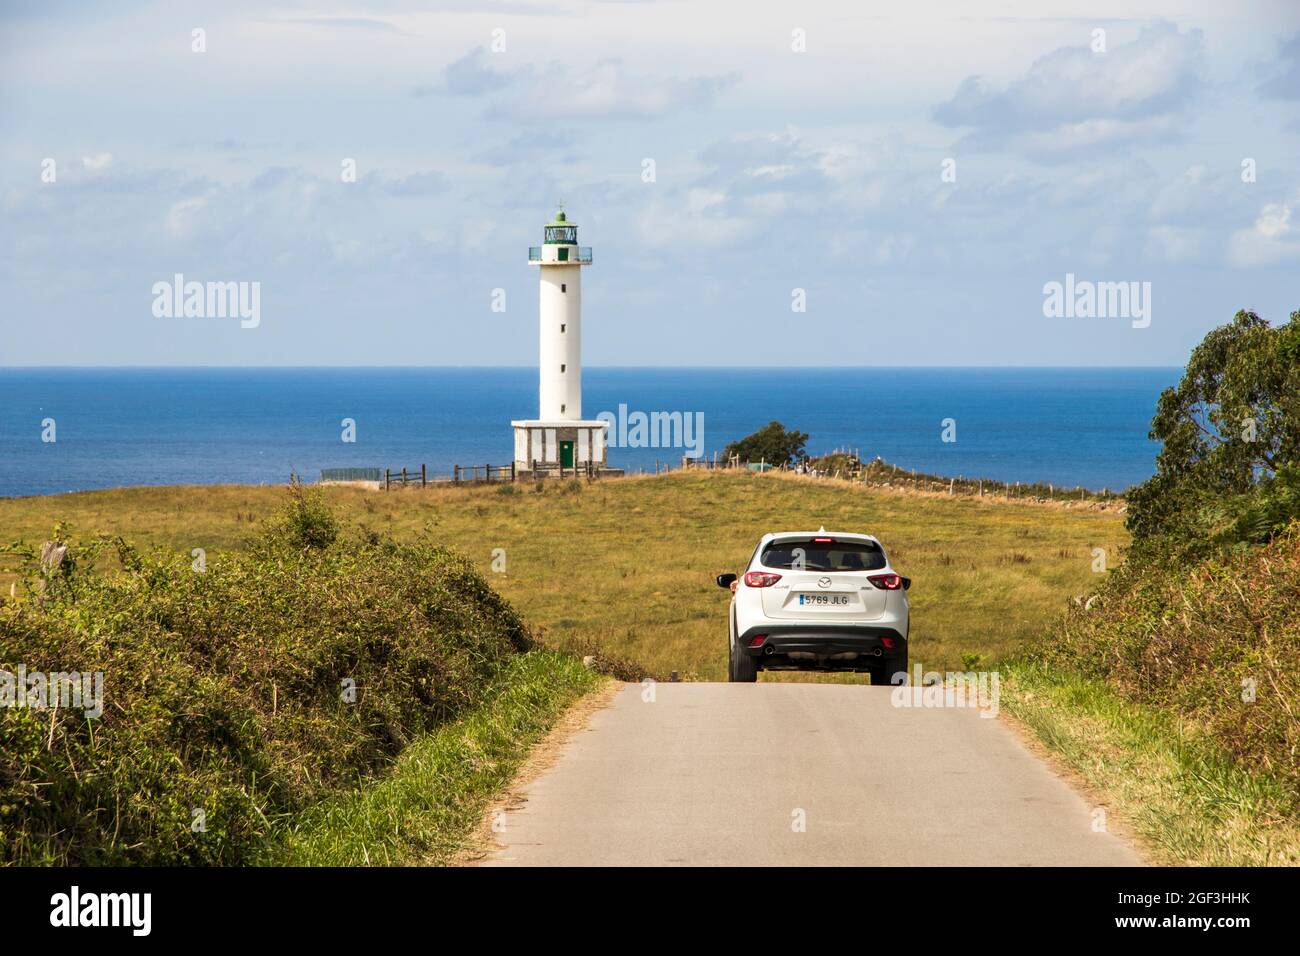 Lastres, España. El faro de Luces cerca de la ciudad costera de Lastres,  con un coche en primer plano Fotografía de stock - Alamy